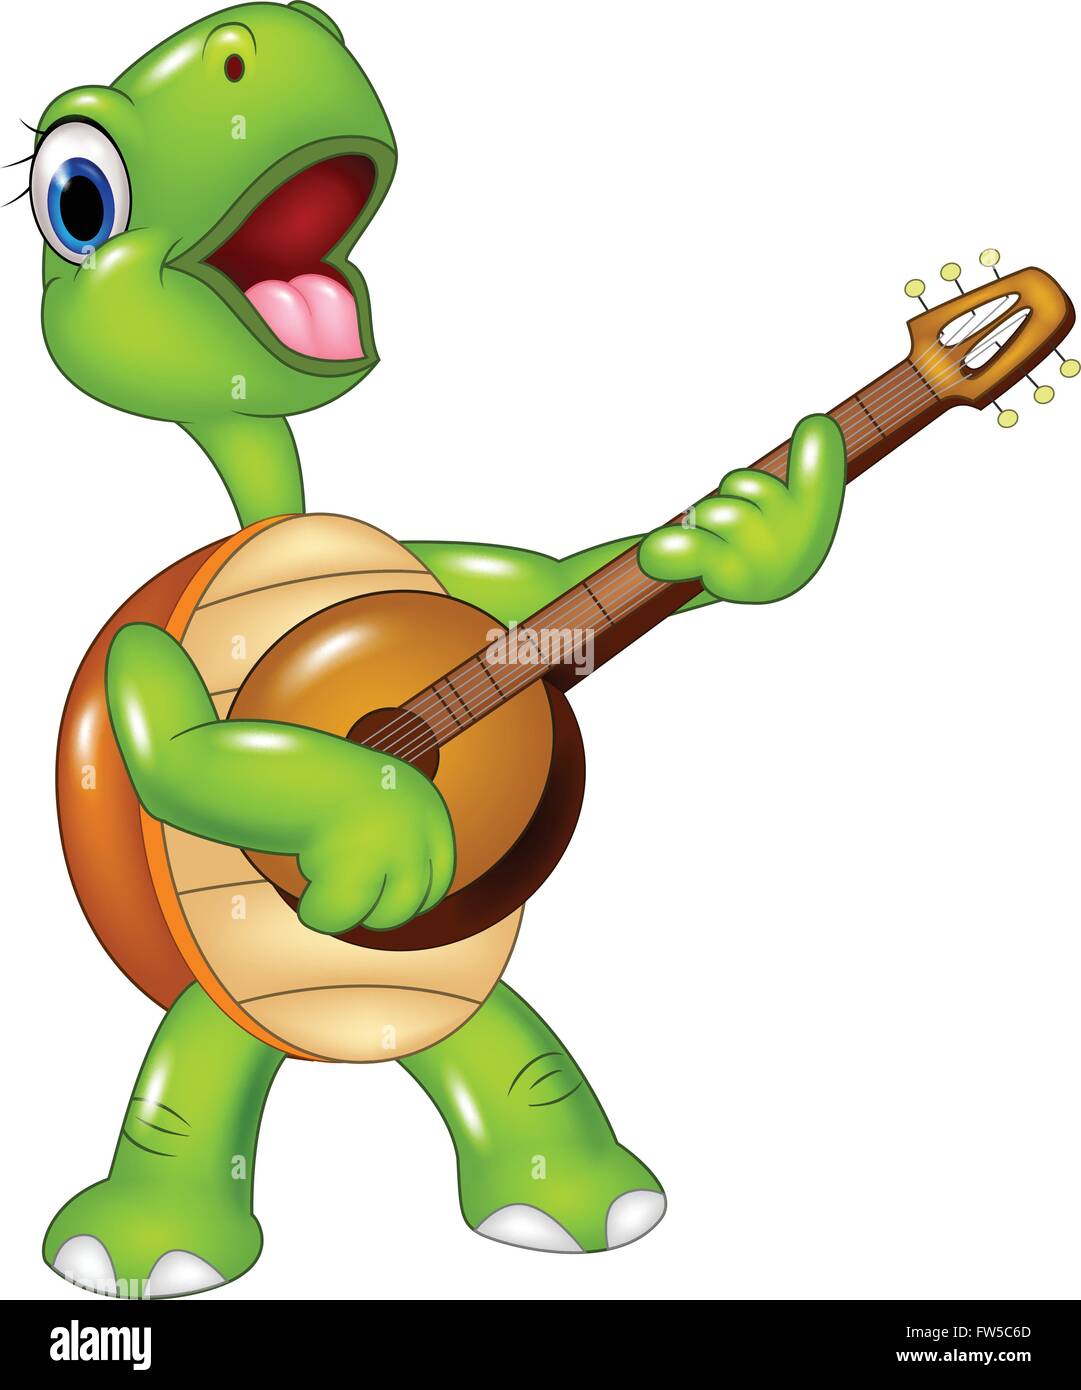 Dessin de tortue jouant de la guitare Illustration de Vecteur